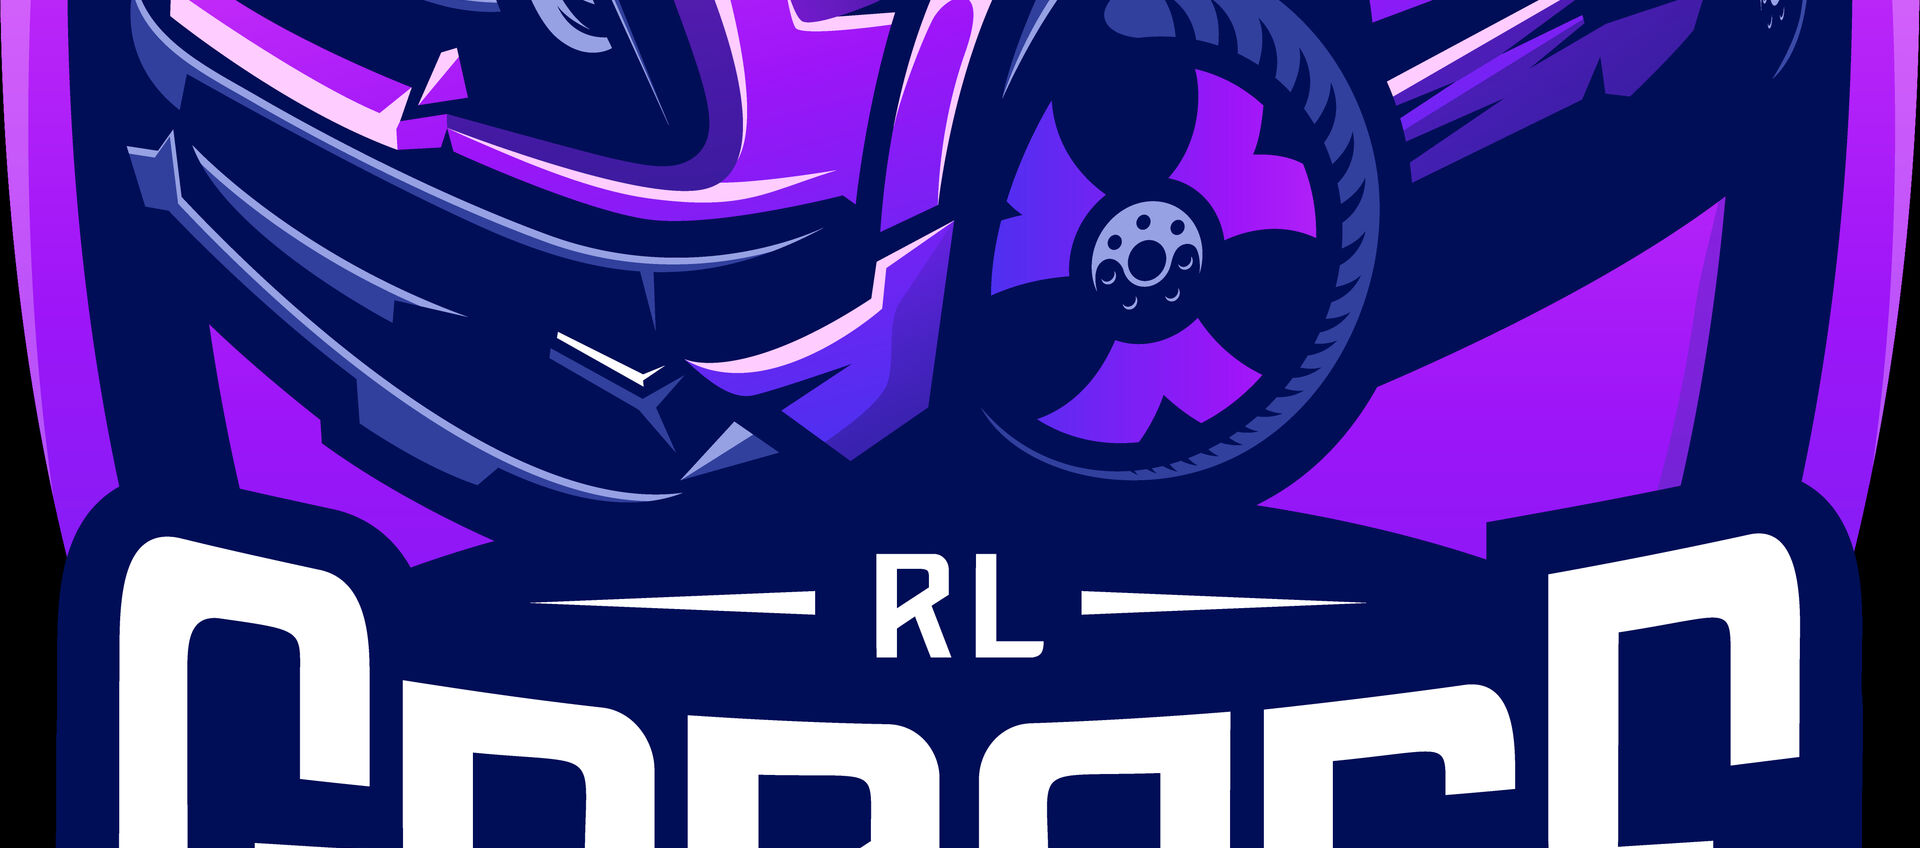 RLG-Forever's header